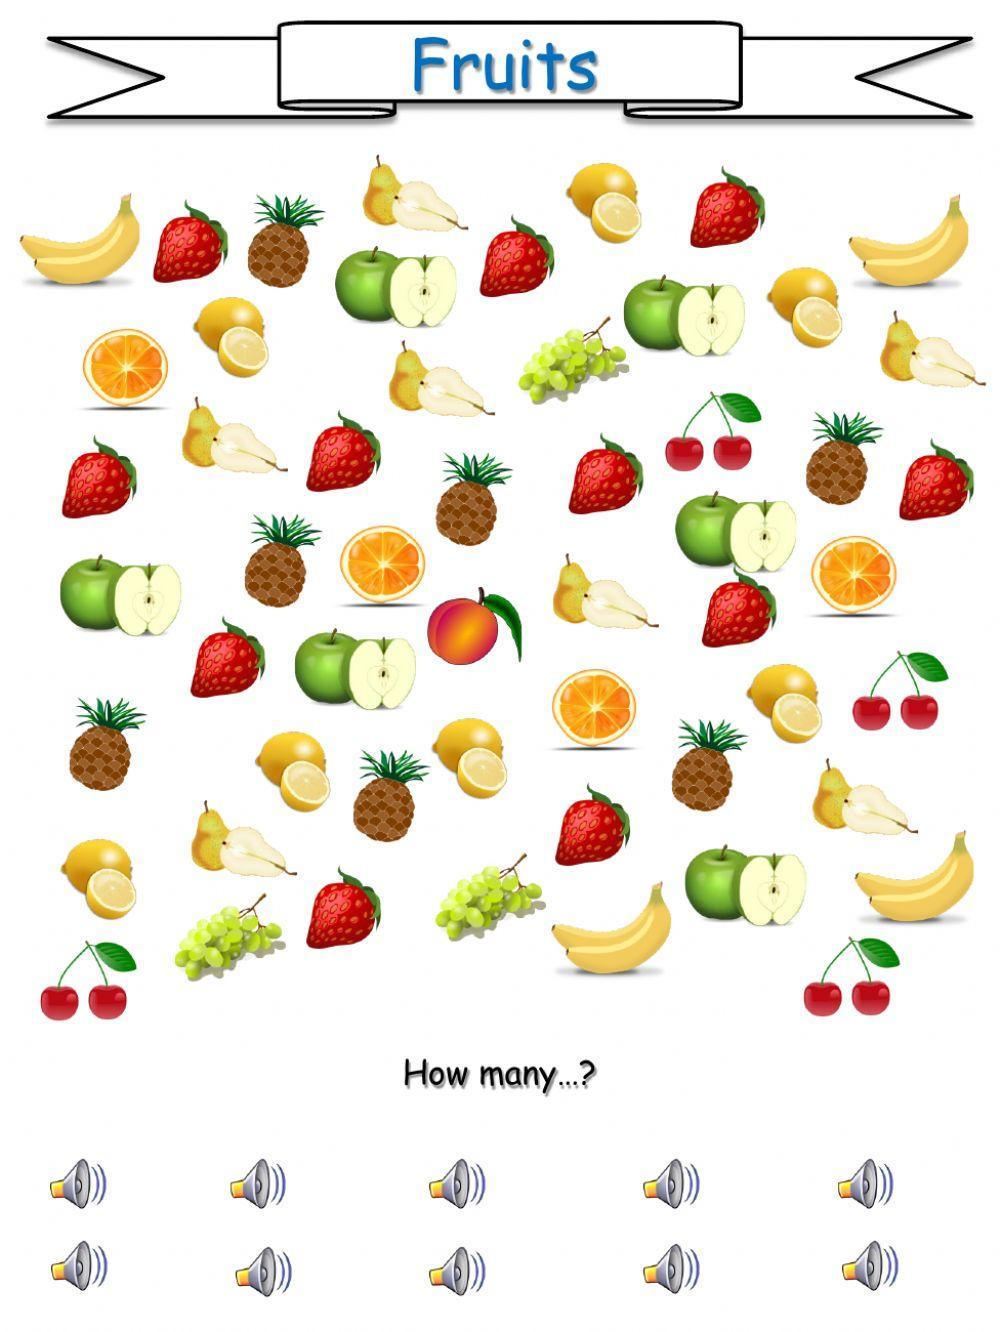 How many fruits?